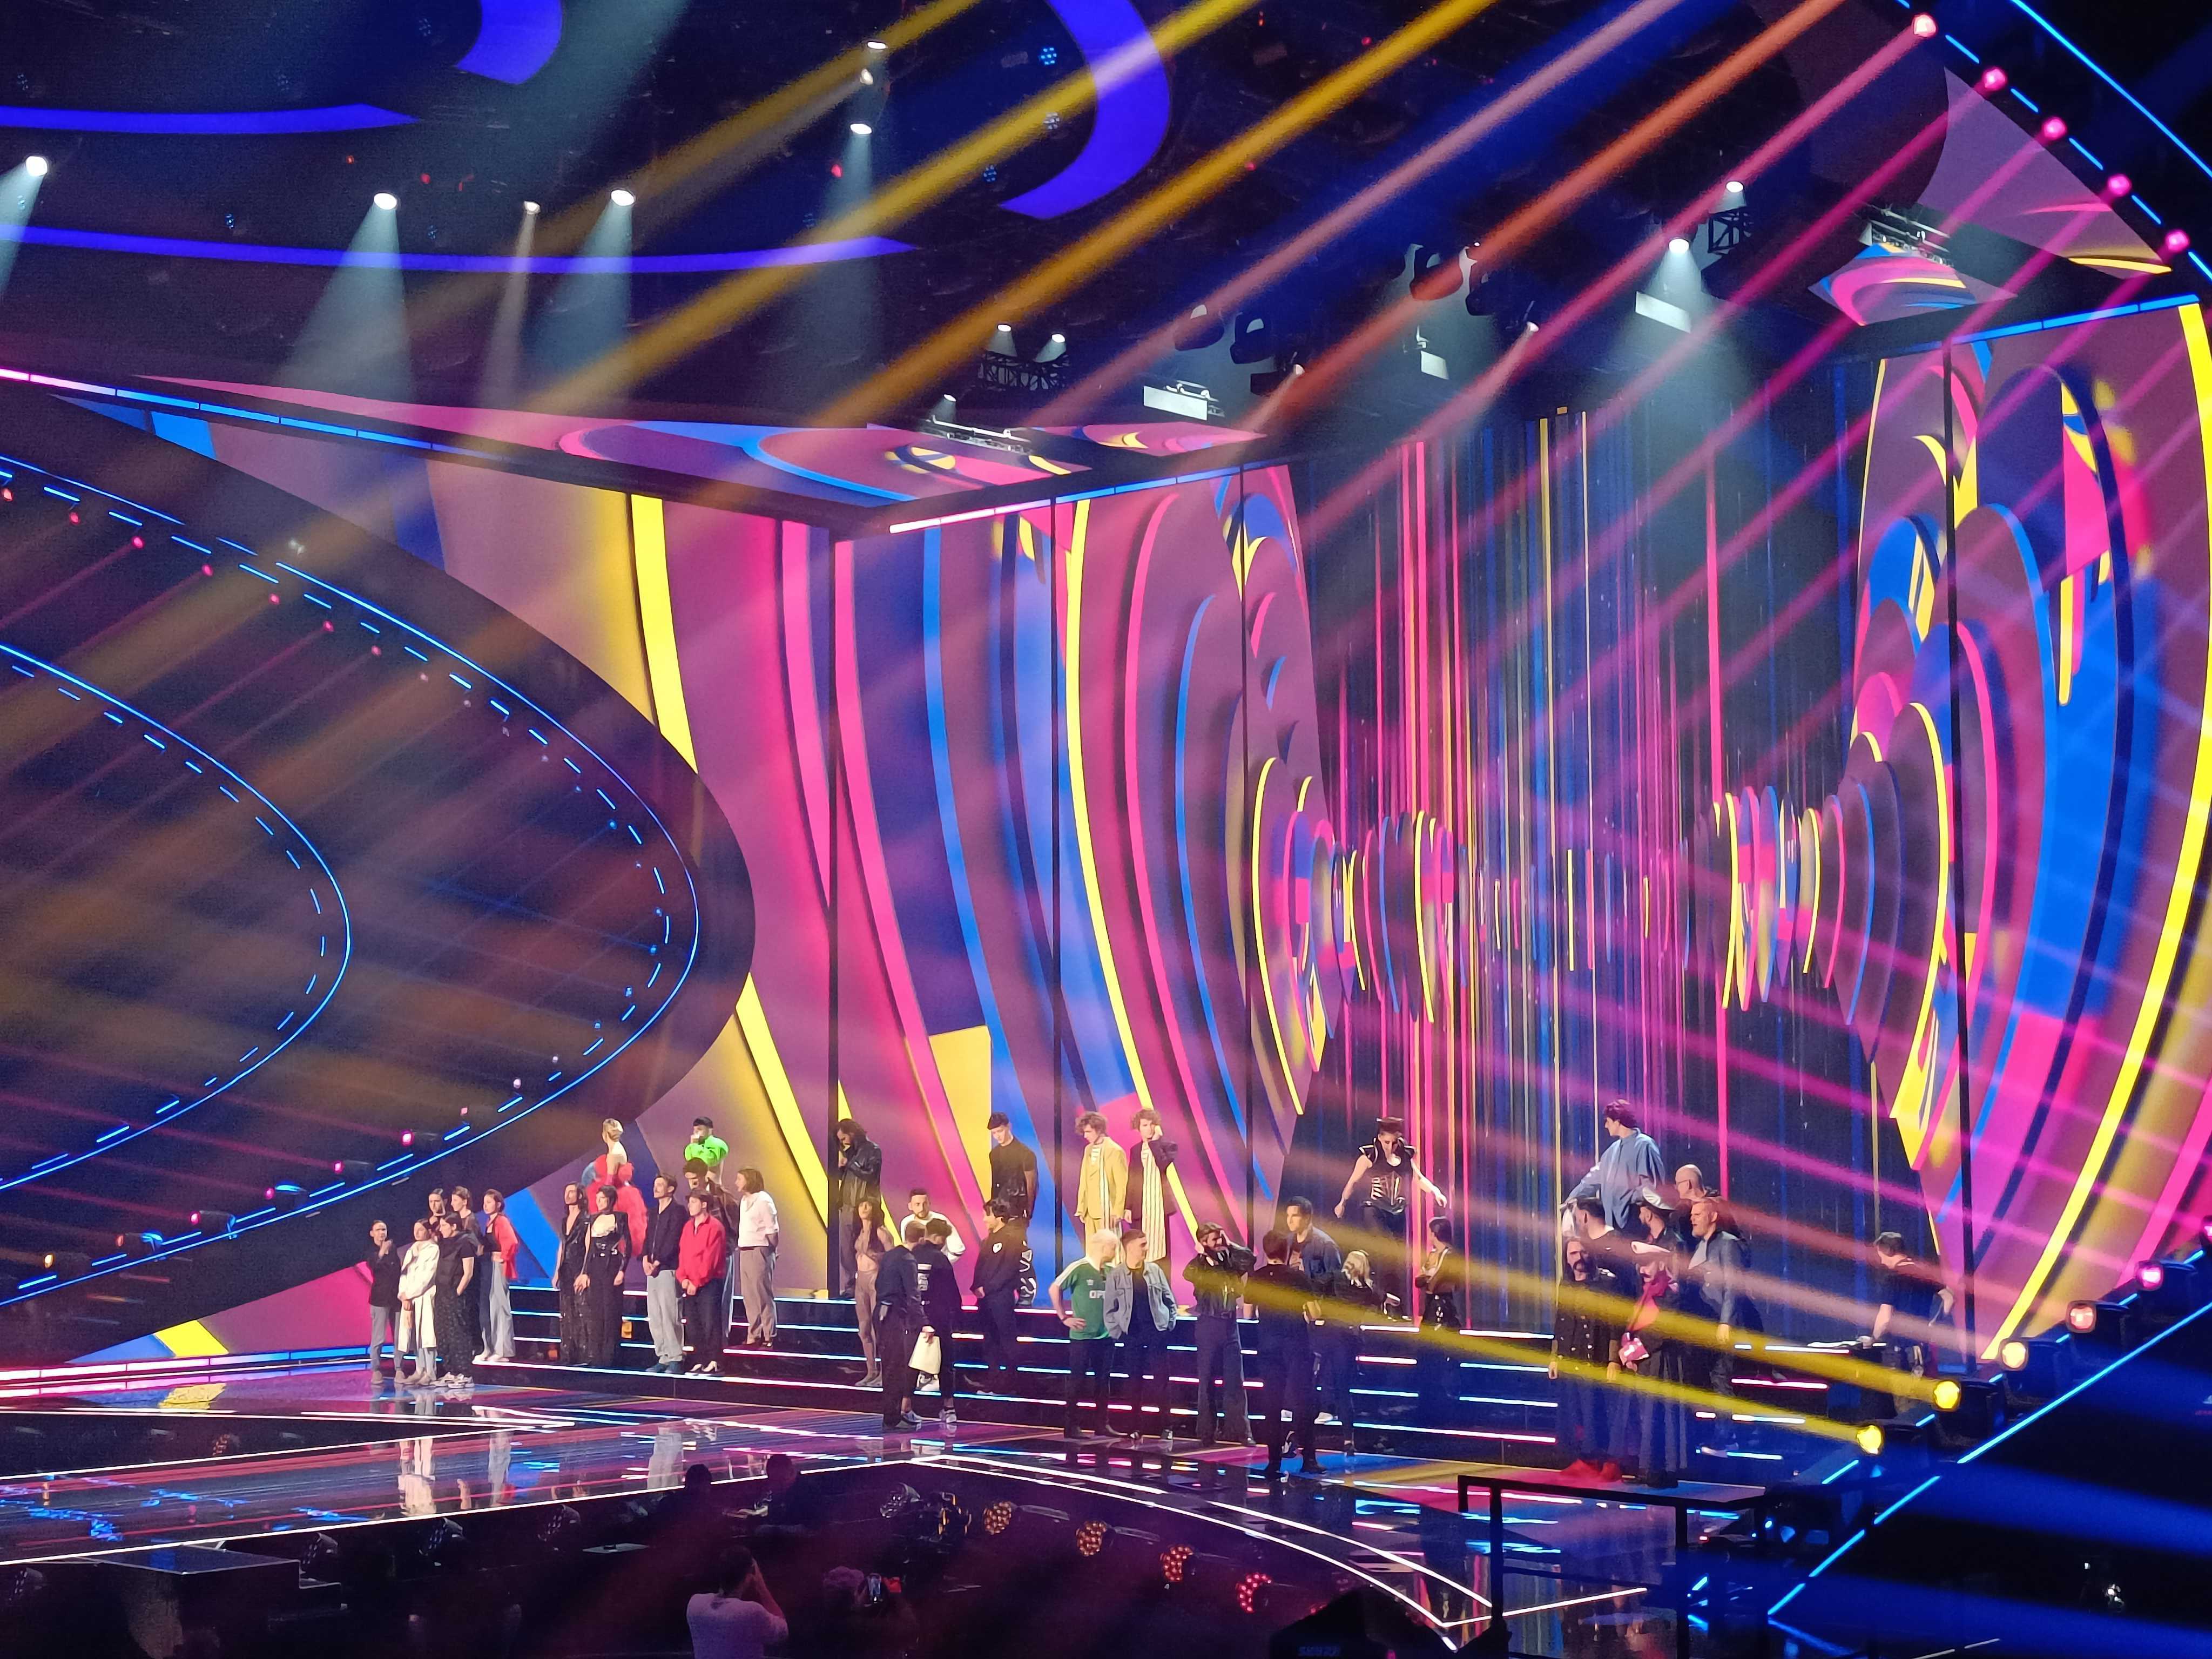 L’annuncio dei finalisti per Eurovision – Songfestival.be – non sarà rinnovato